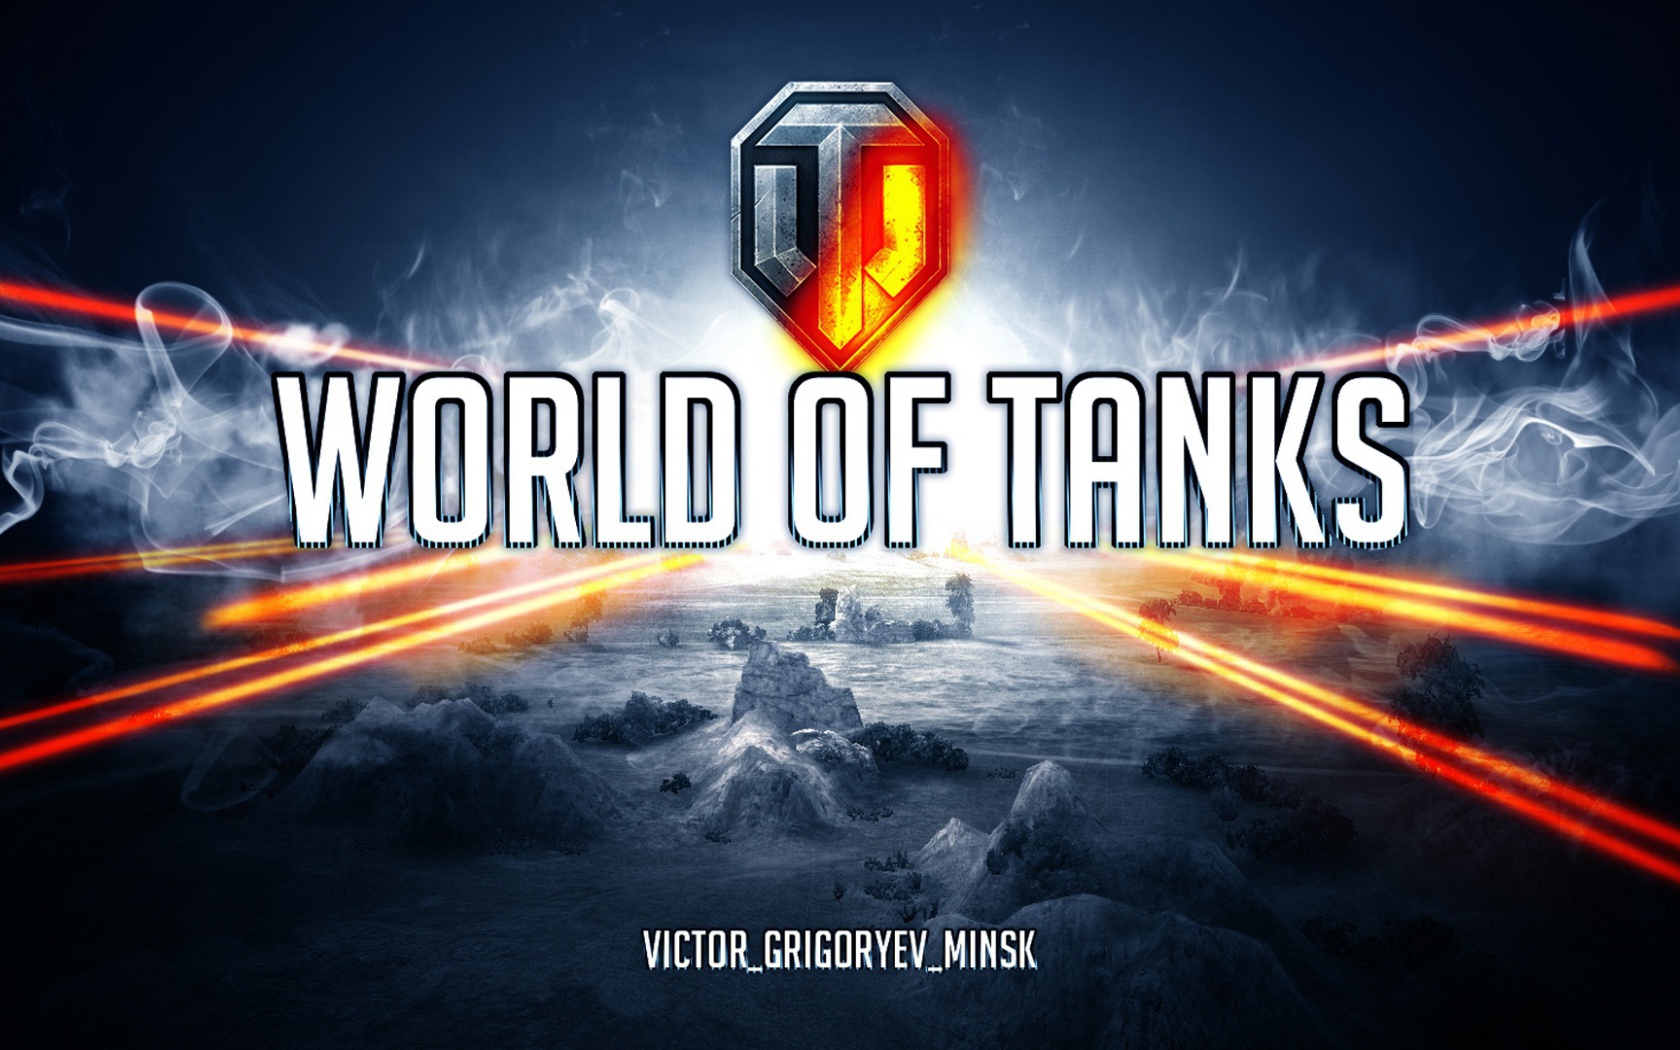 World of Tanks: взгляните на мир танков